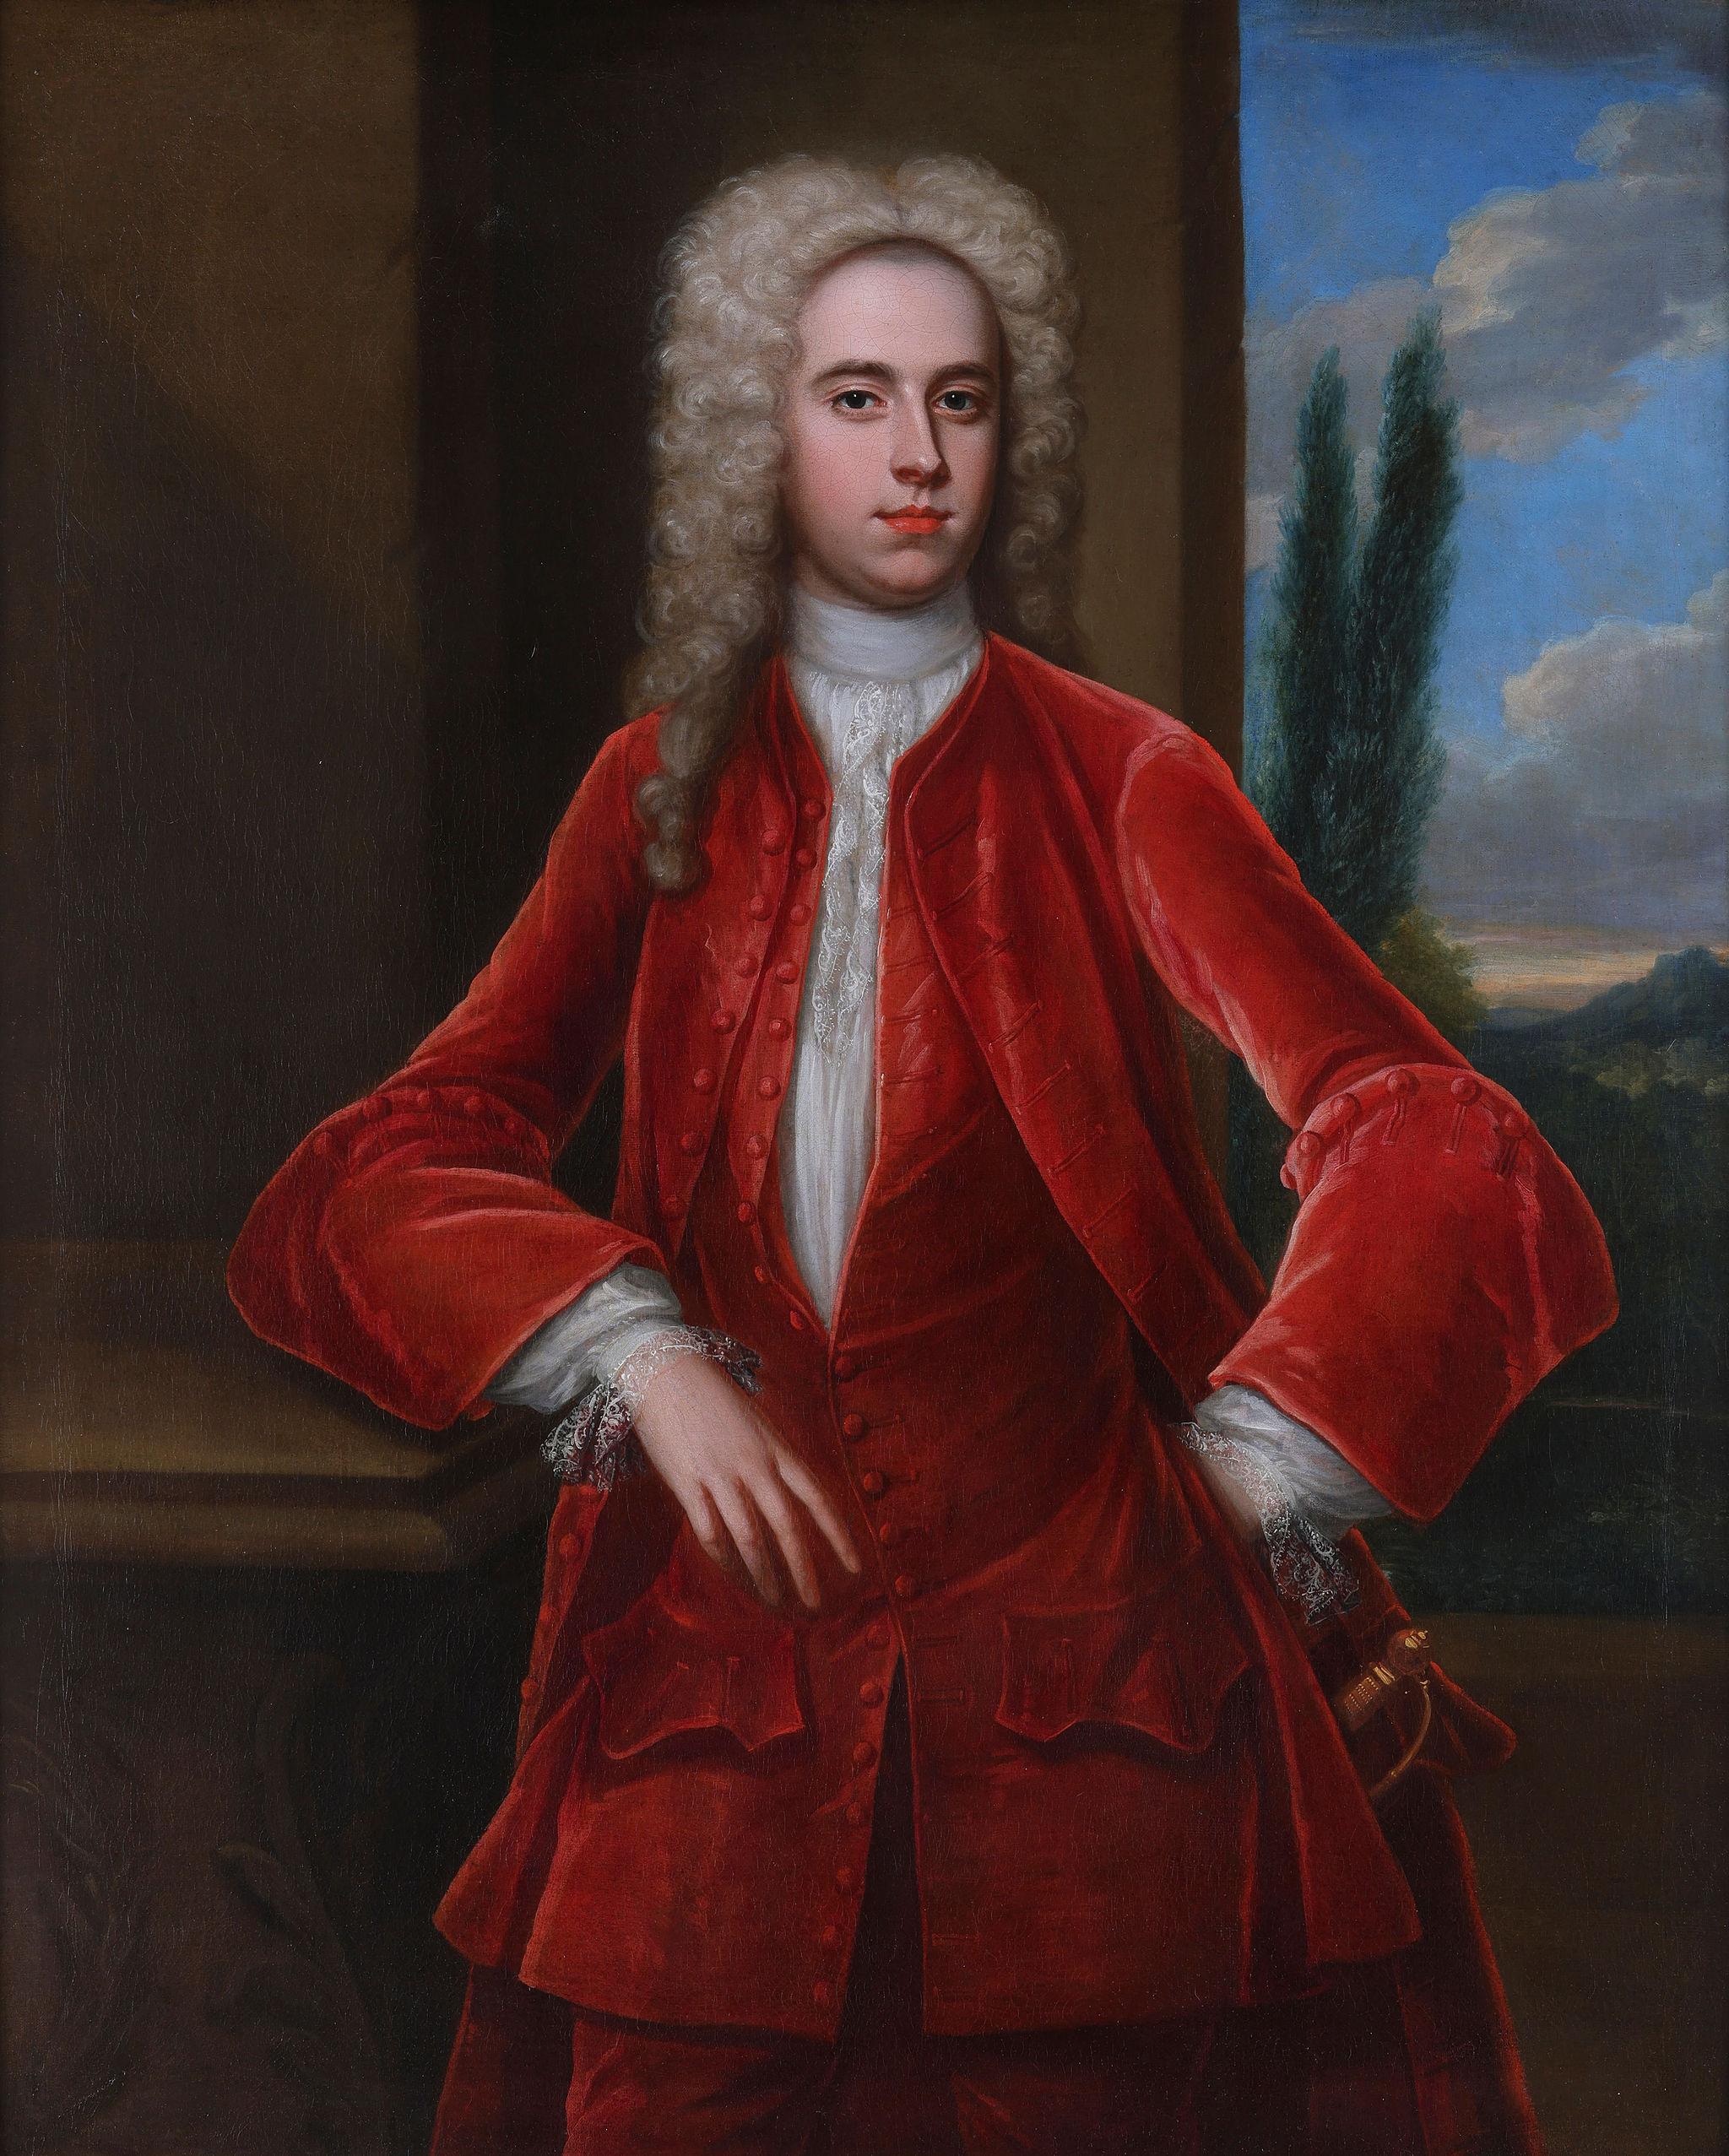 Porträt eines Mannes, möglicherweise Arthur Viscount Irwin, Temple Newsam, Öl auf Leinwand – Painting von Charles Jervas